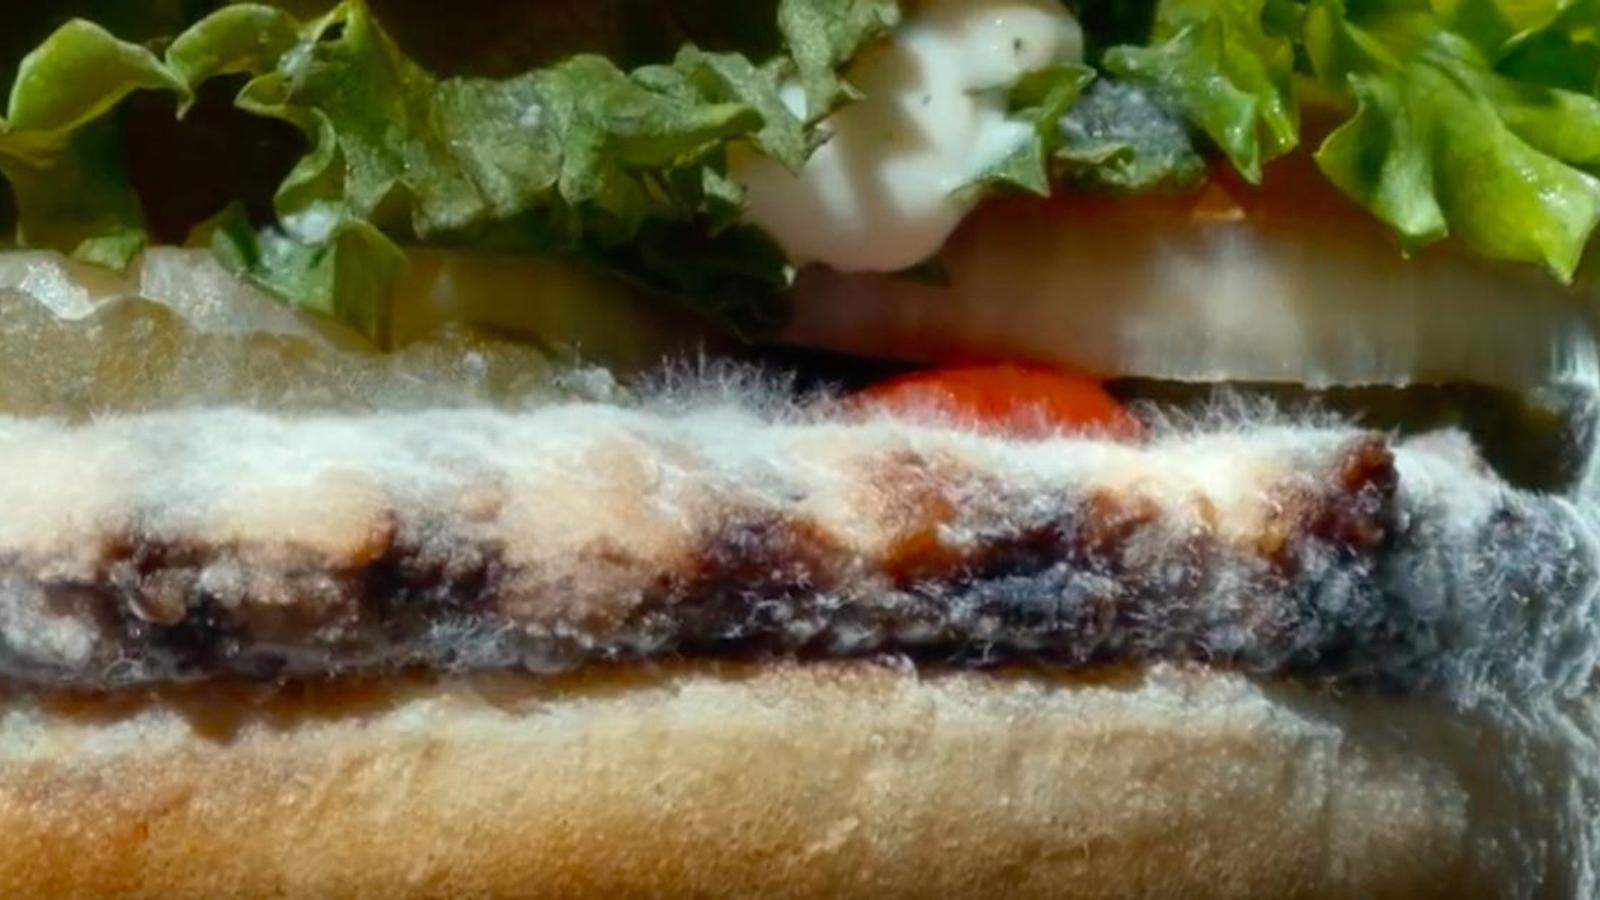 Burger King lance une nouvelle campagne publicitaire qui met en vedette… un Whopper moisi!